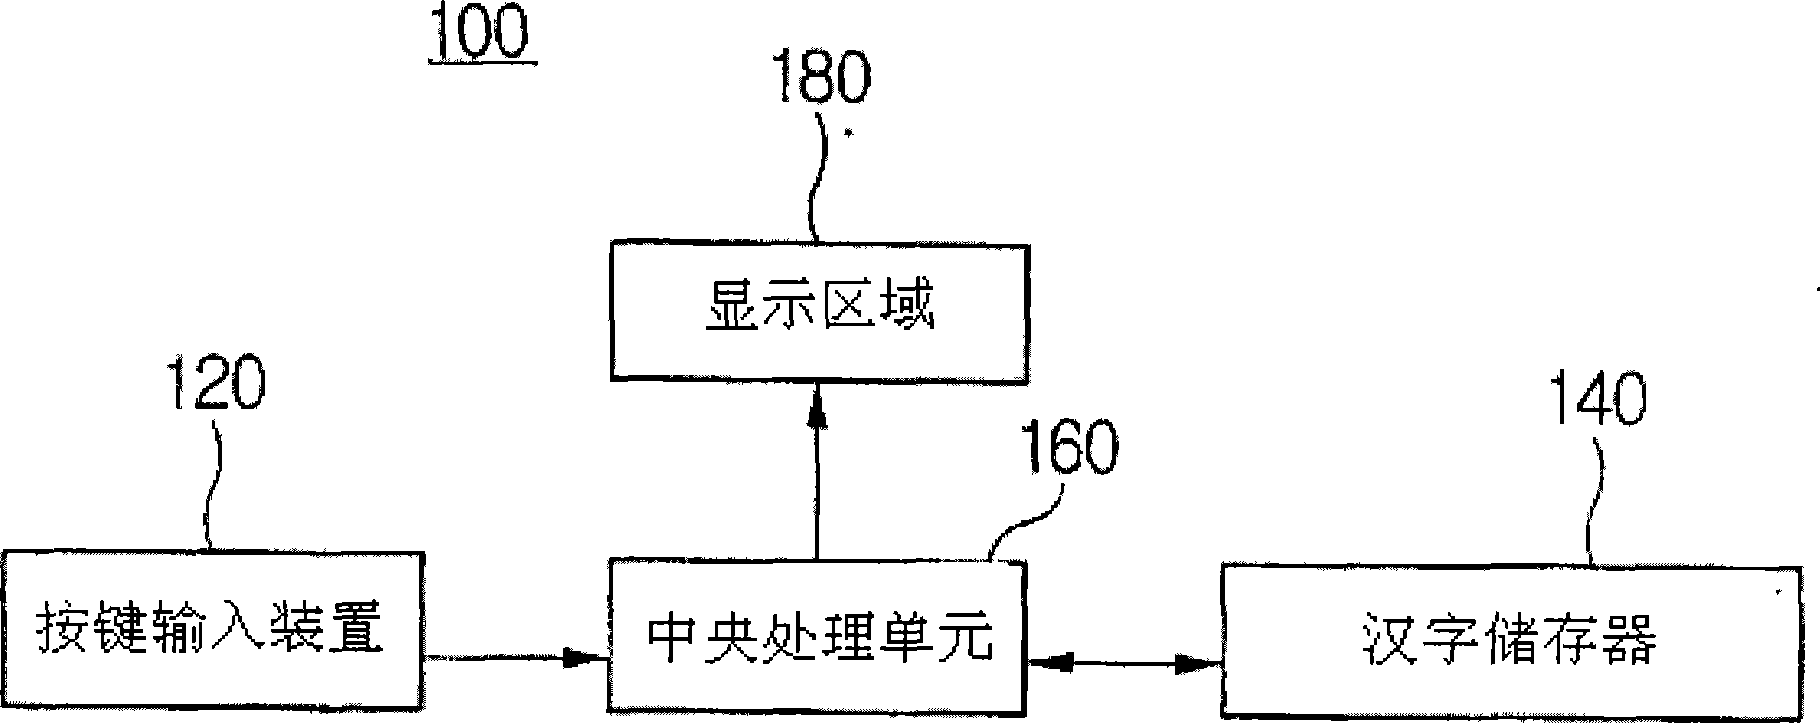 Method of inputting Chinese language using mobile terminal